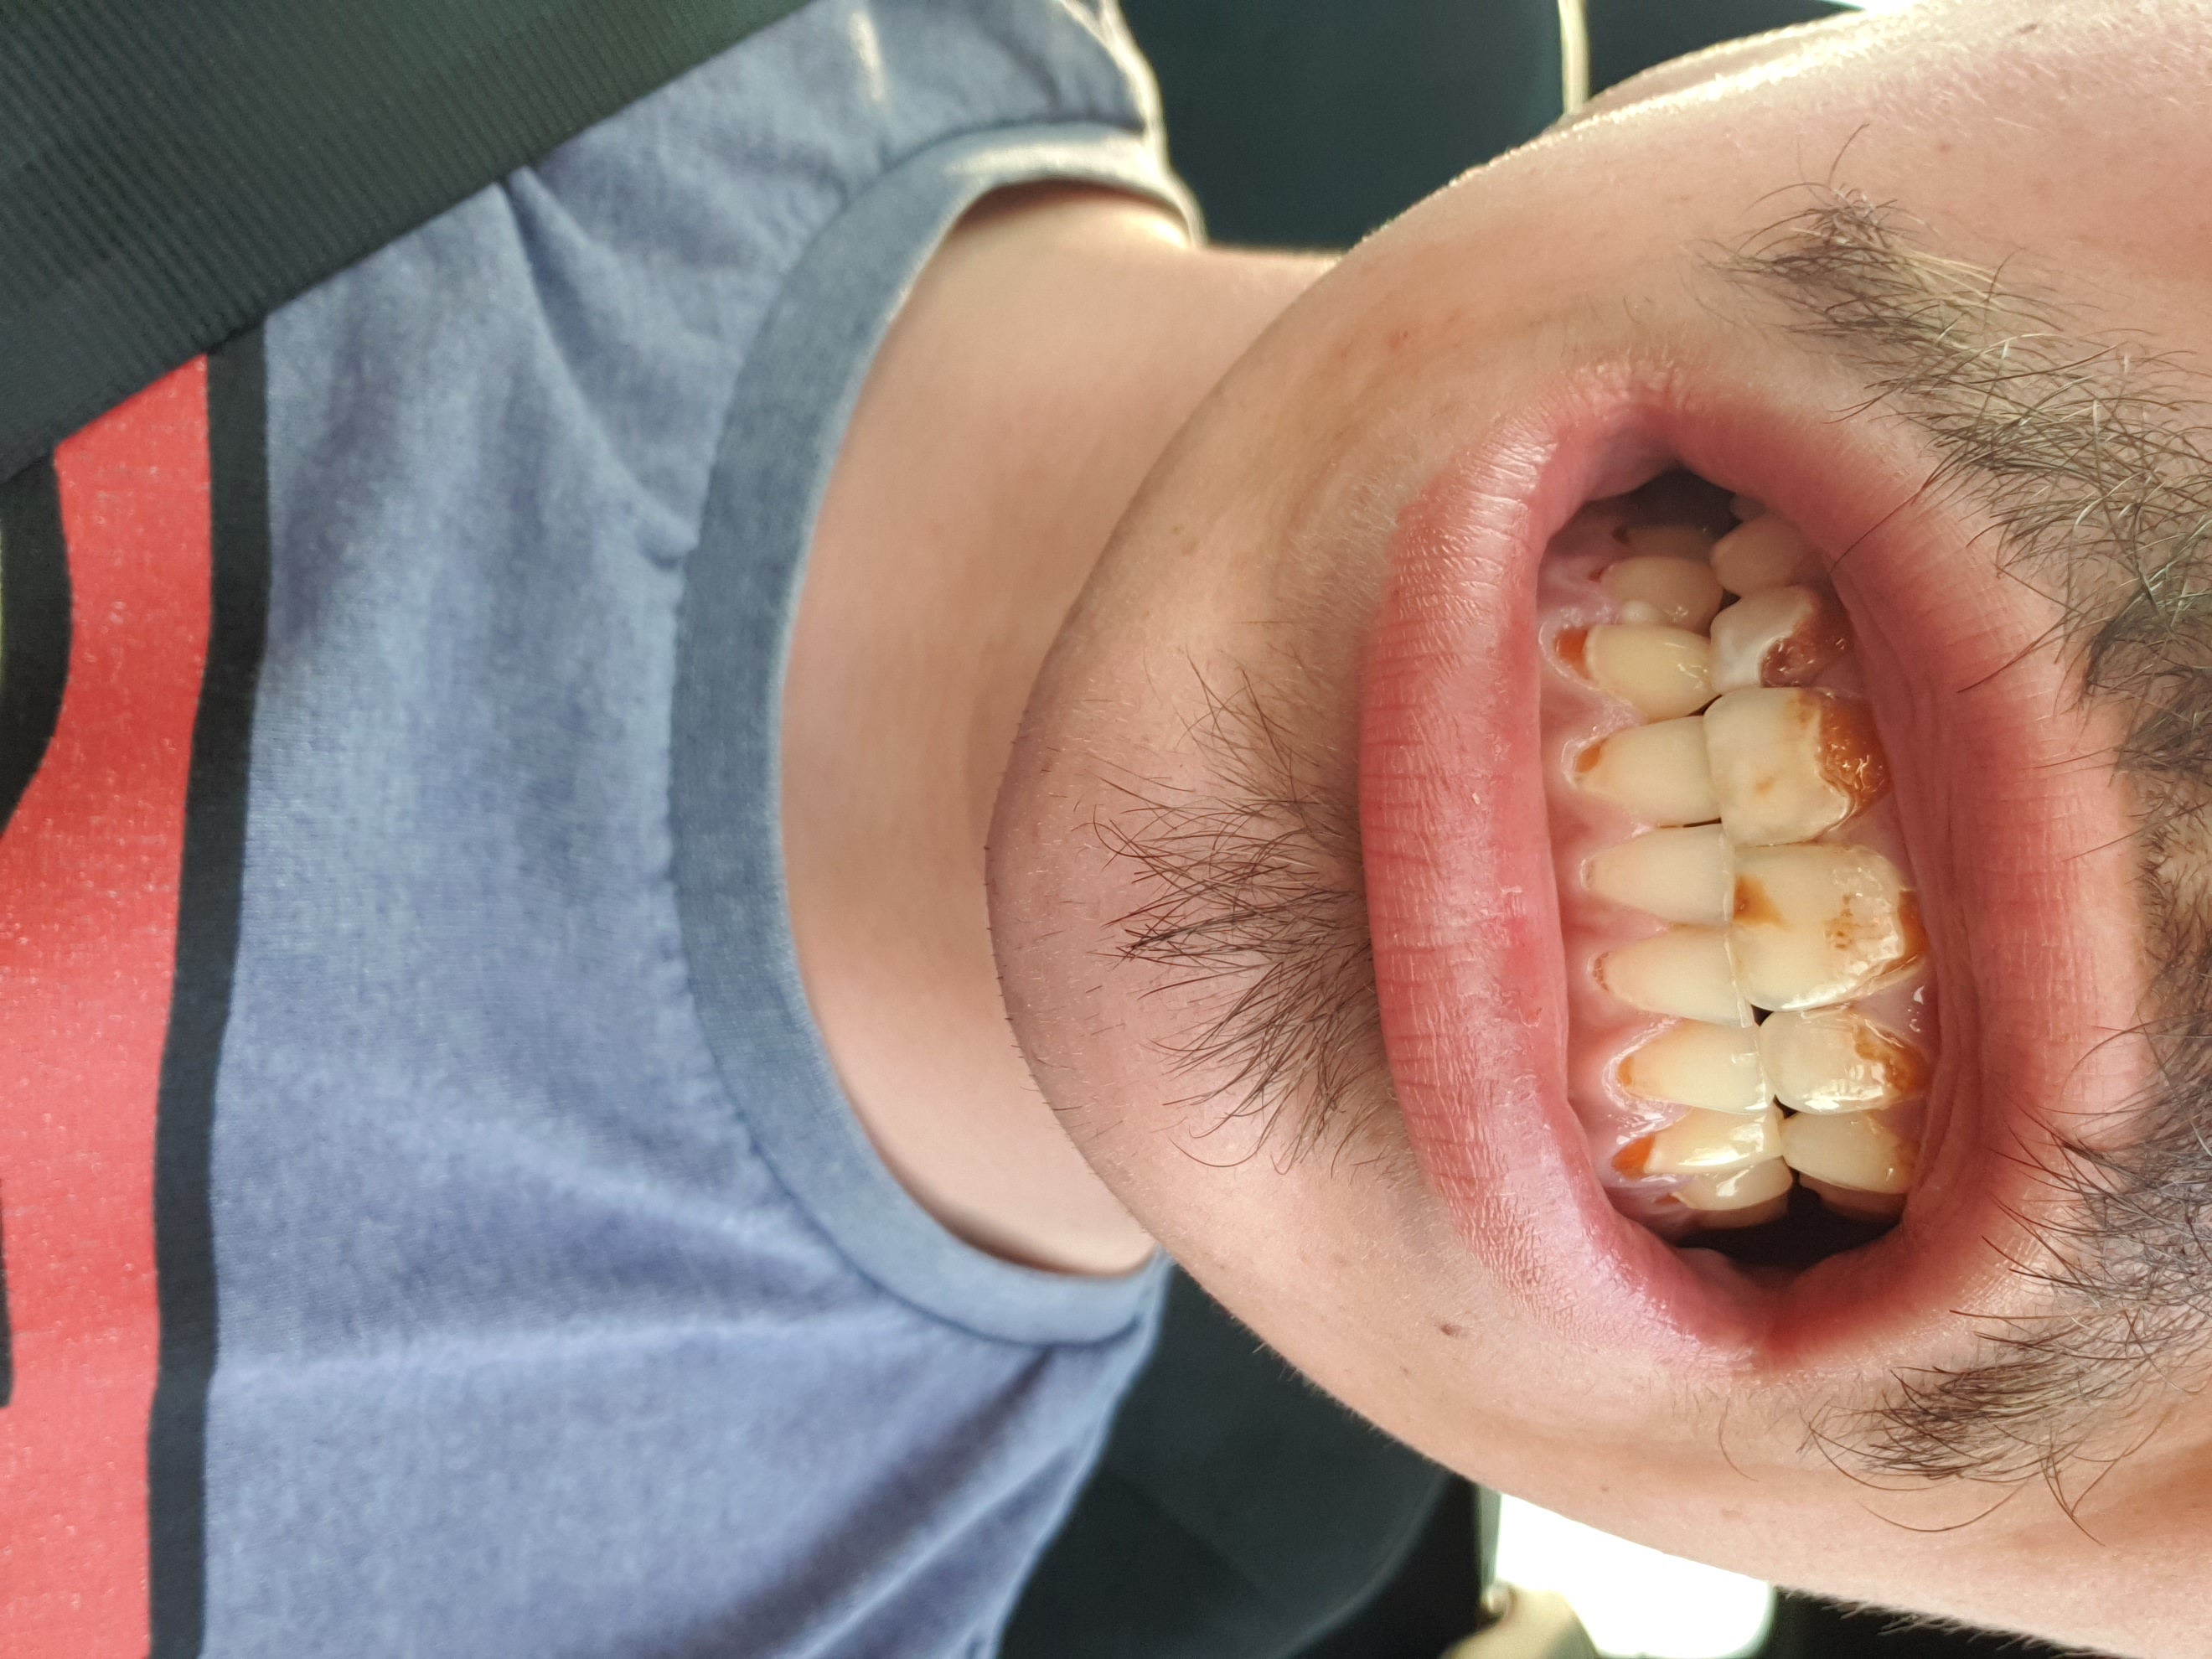 Vloeibaar Winkelier sector Heel erg slechte tanden op jonge leeftijd (22) | Tandarts.nl Forum